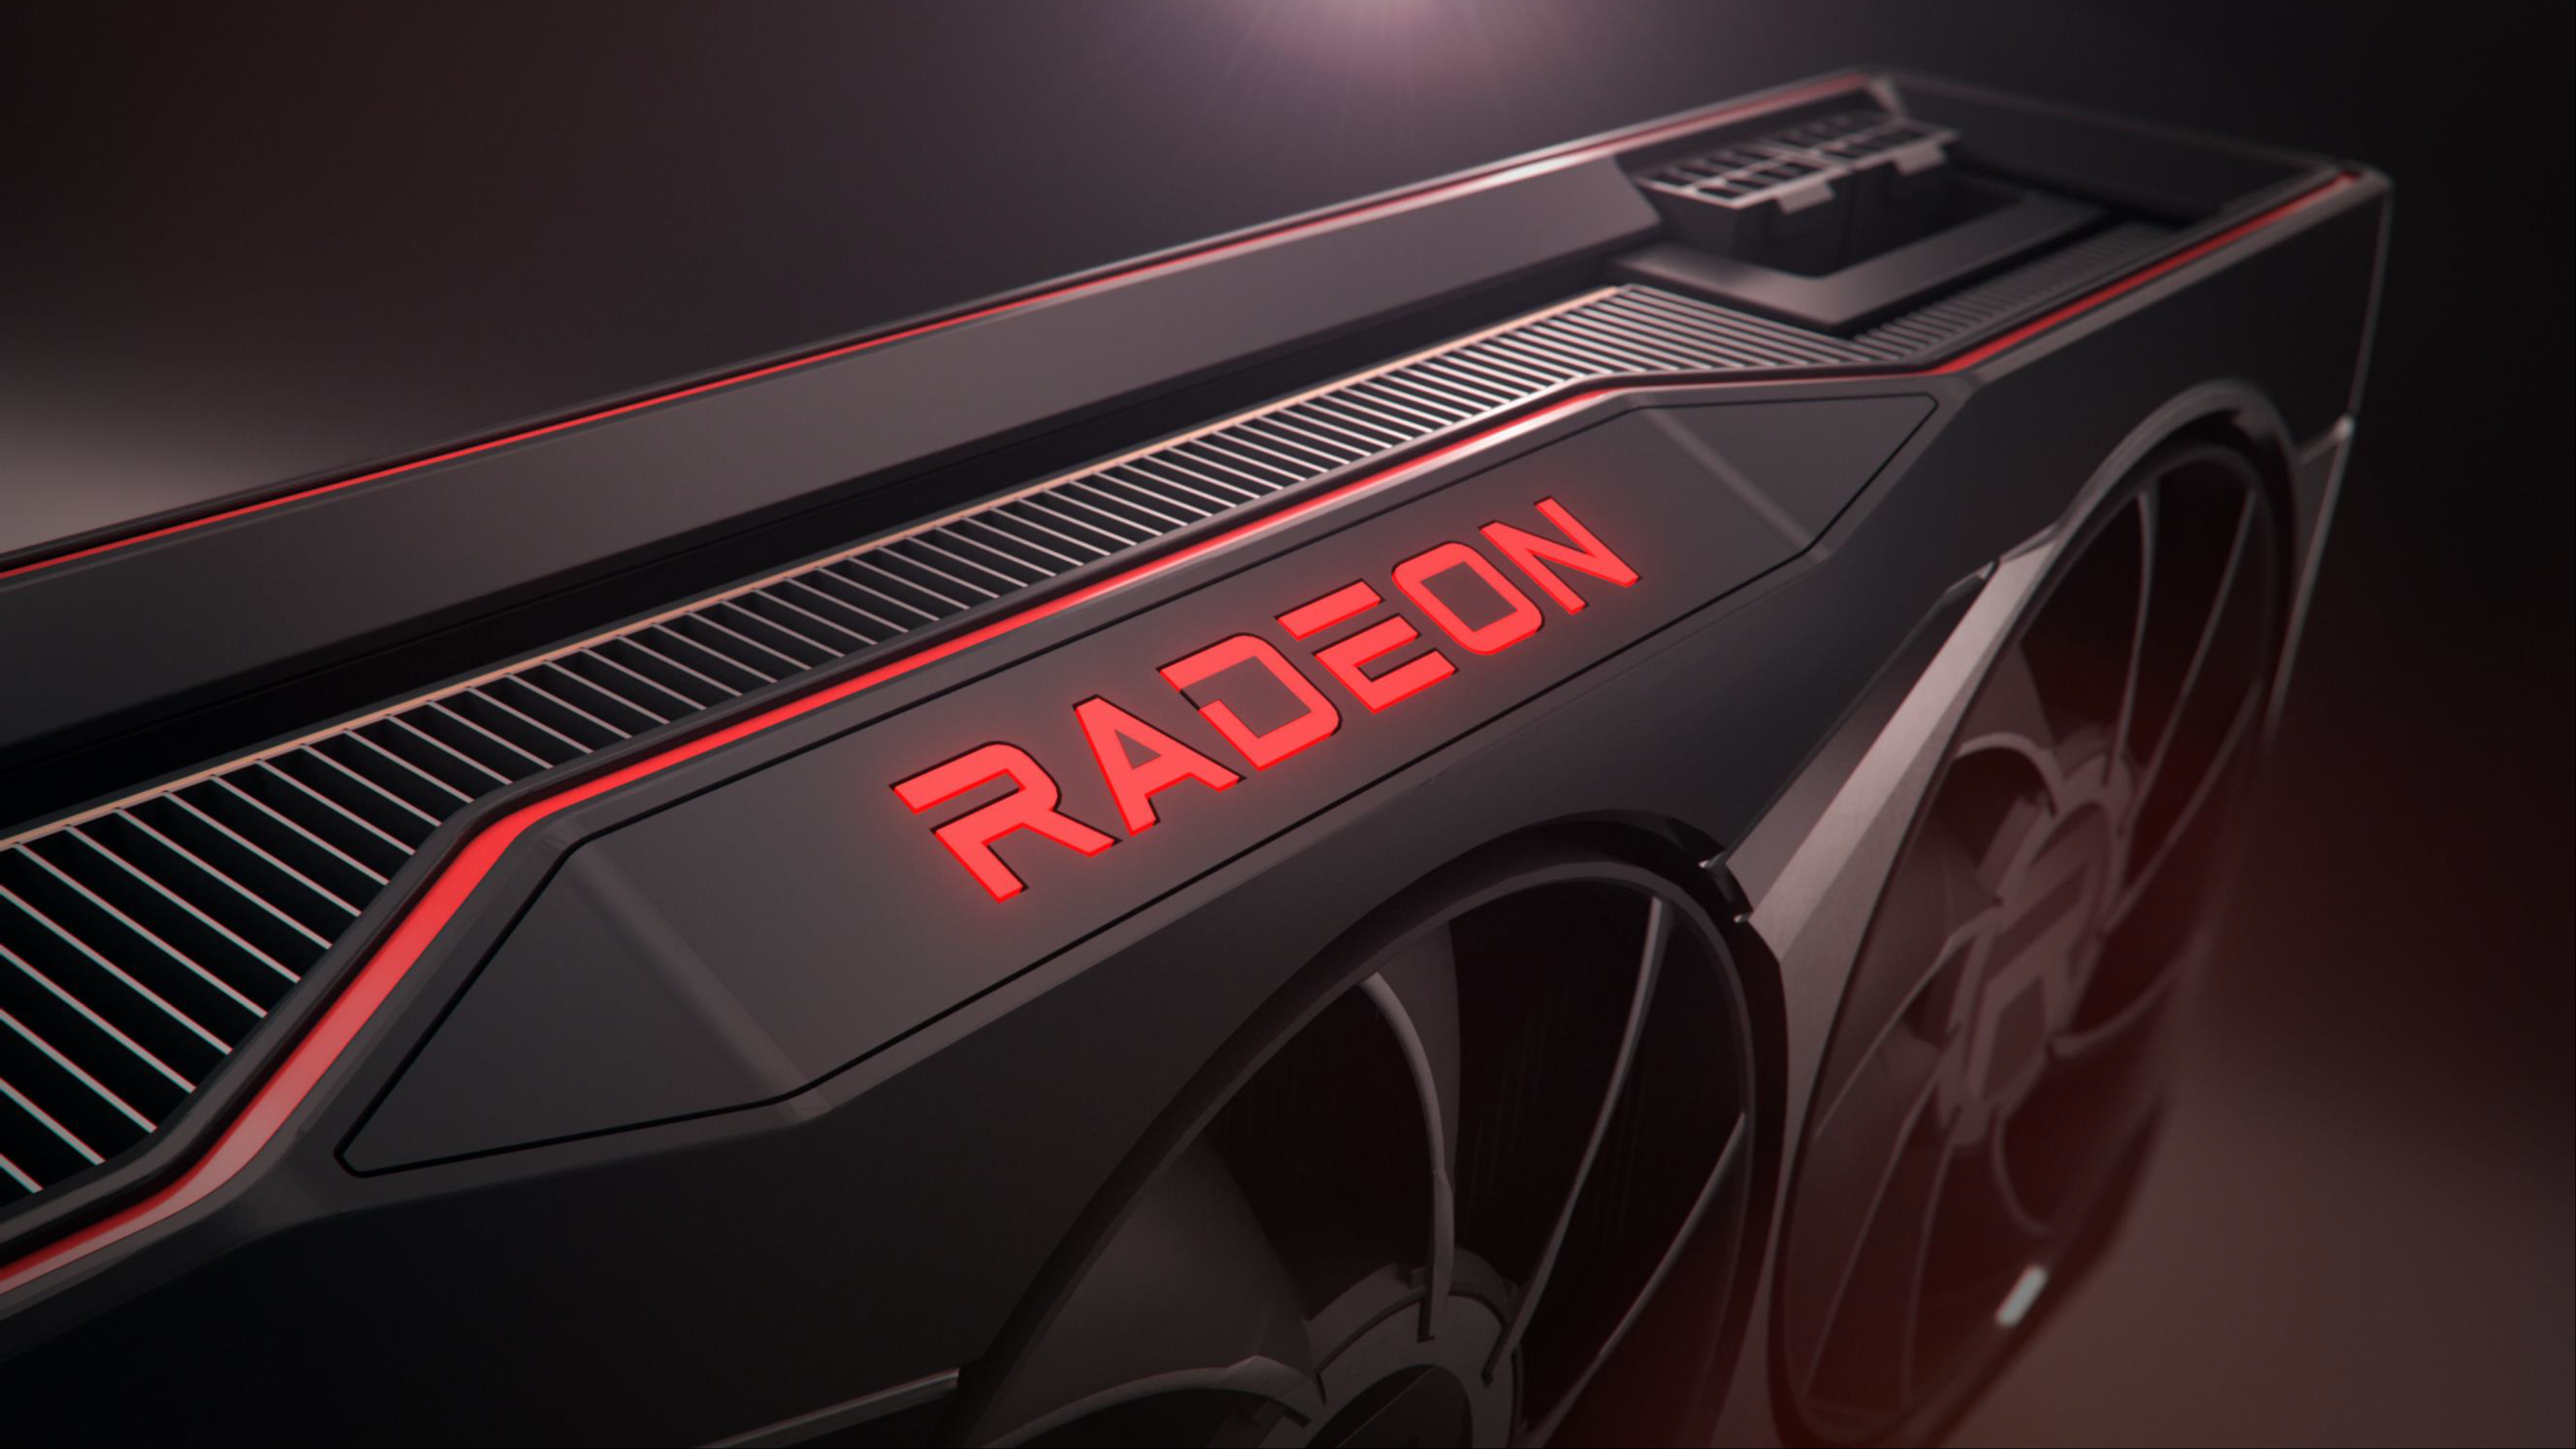 По слухам, AMD Radeon RX 6950XT получит тактовую частоту более 2,5 ГГц и мощность 350 Вт